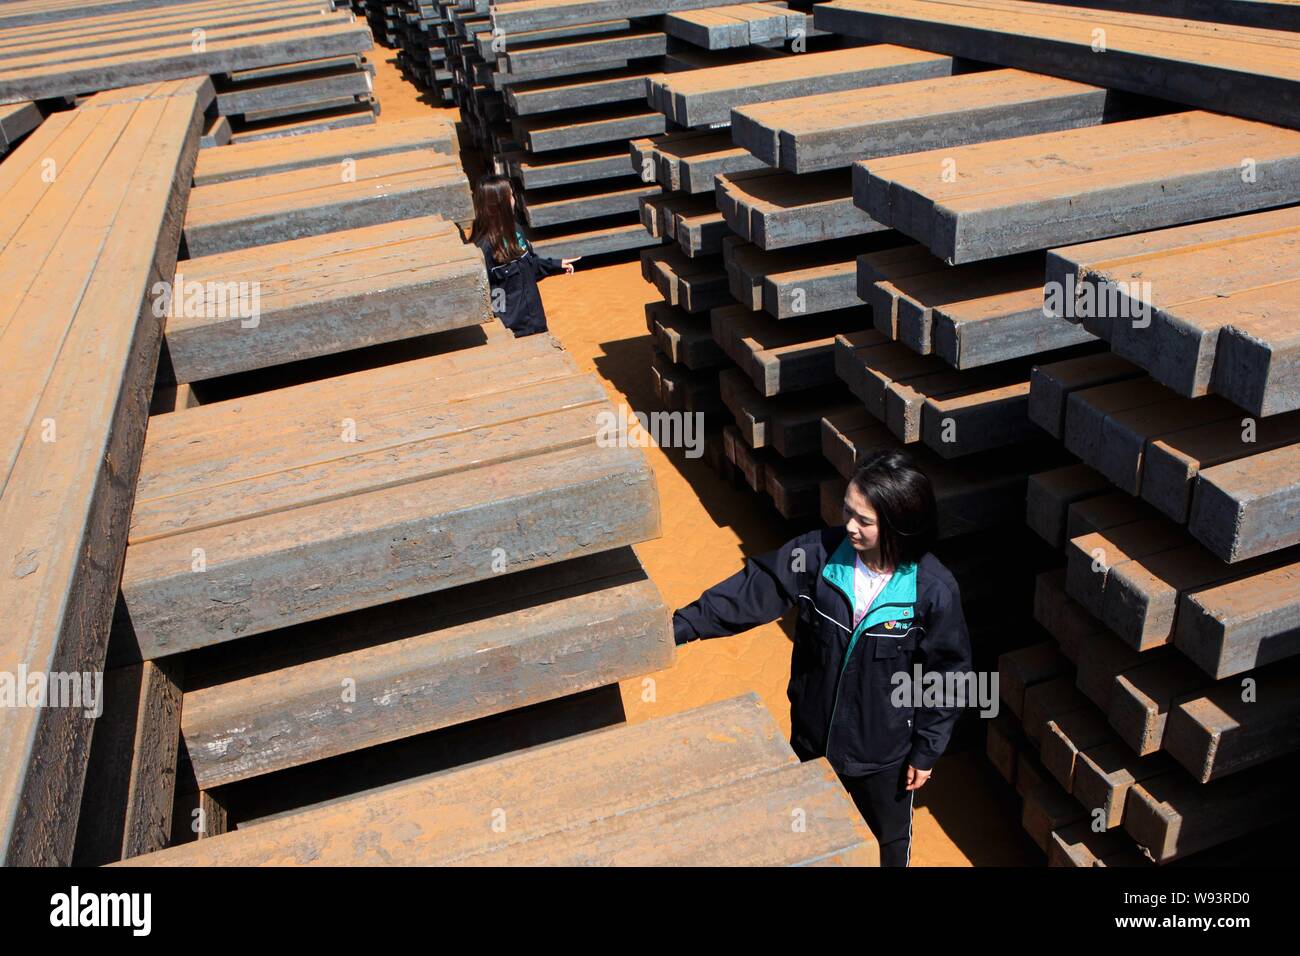 Ein weiblicher chinesischer Arbeiter untersucht einen Stapel von Rohstahl im Ausland Ganyu Ganyu Hafen in Grafschaft zu geliefert werden, East China Jiangsu Provinz, 18 Sept Stockfoto